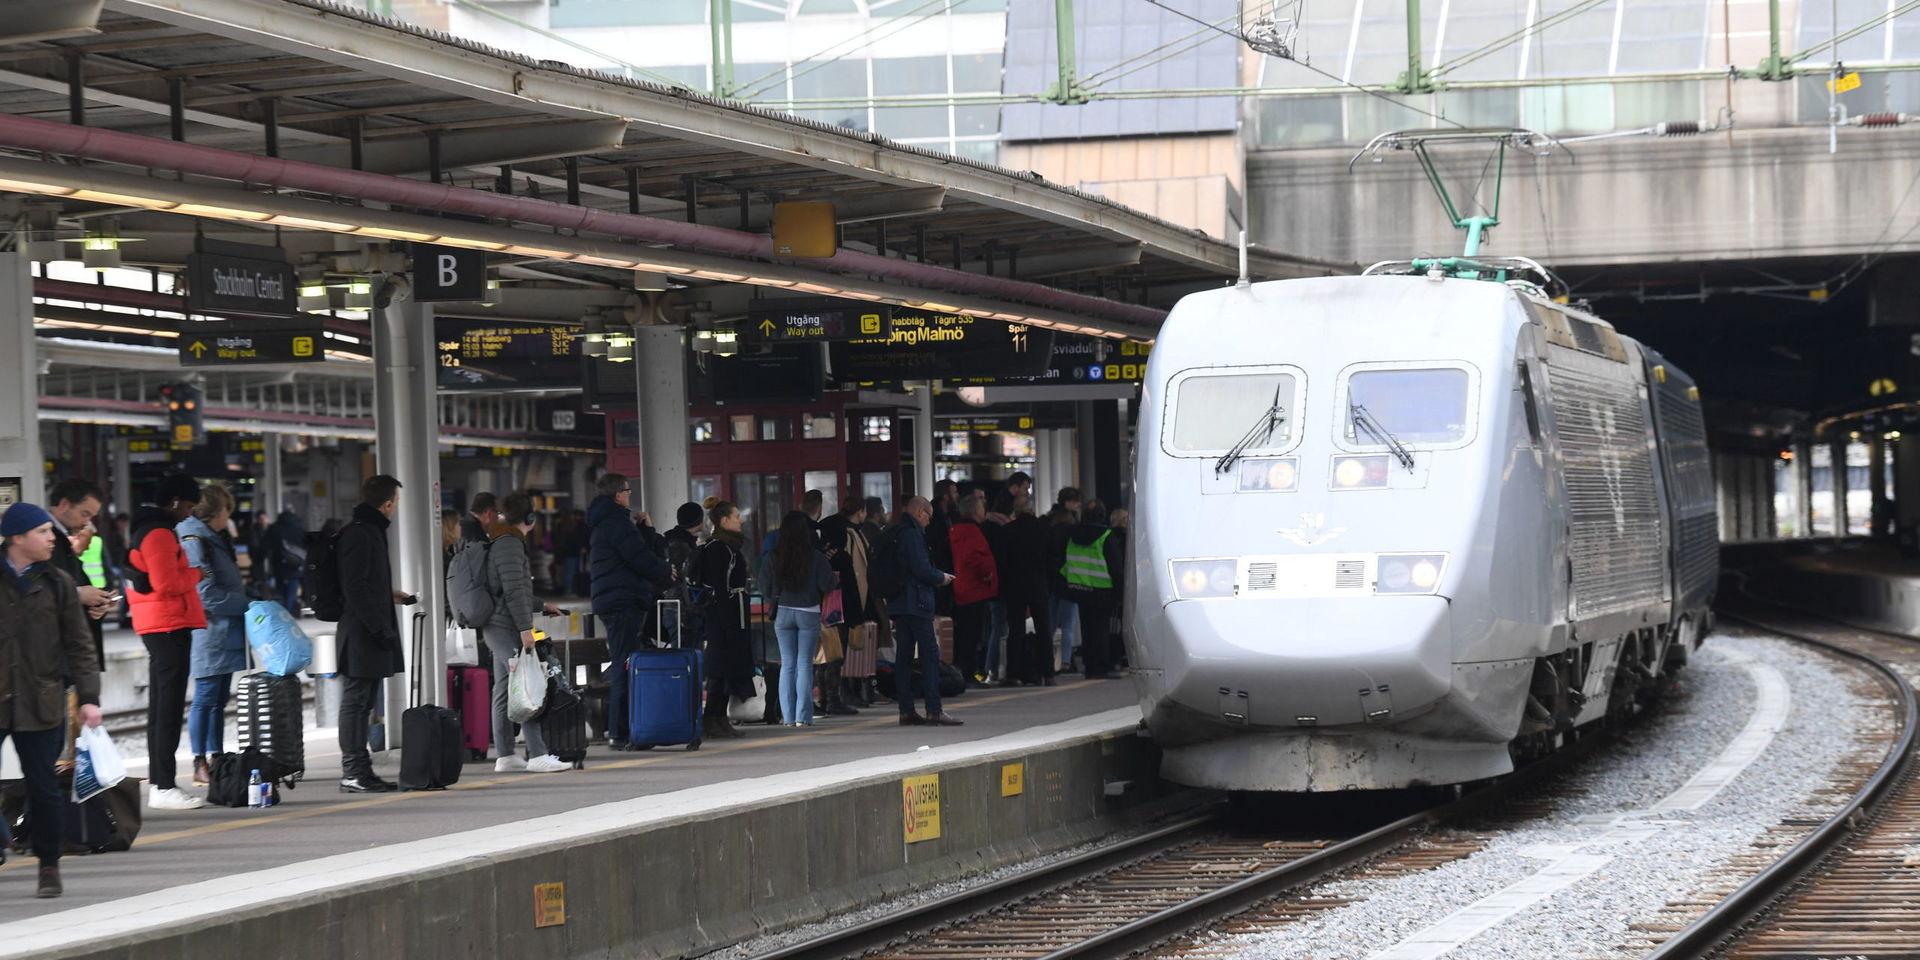 Tåg kan bli en potentiell smittspridare när efterfrågan på biljetter till turistorter ökar. Arkivbild.